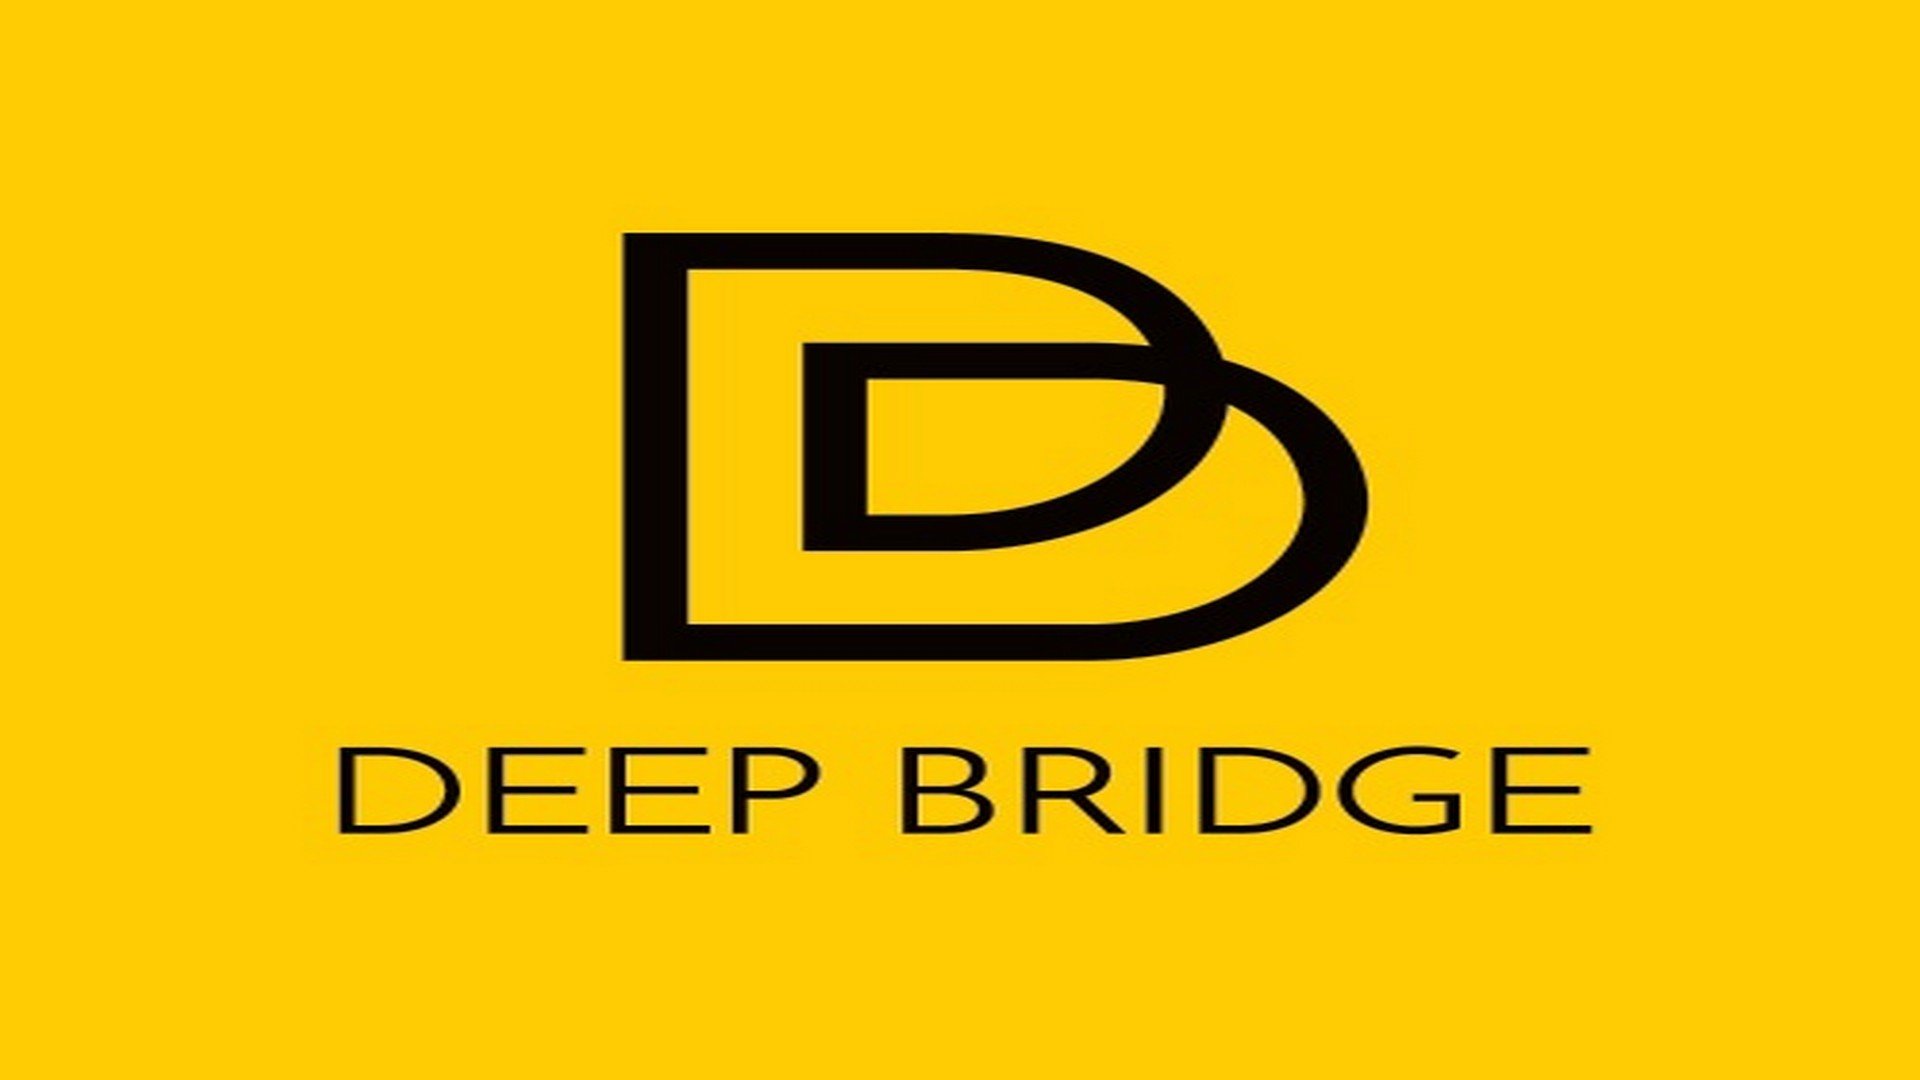 Koen Van Impe ondergaat imposante metamorfose als Von Trapp - Logo deep bridge 1